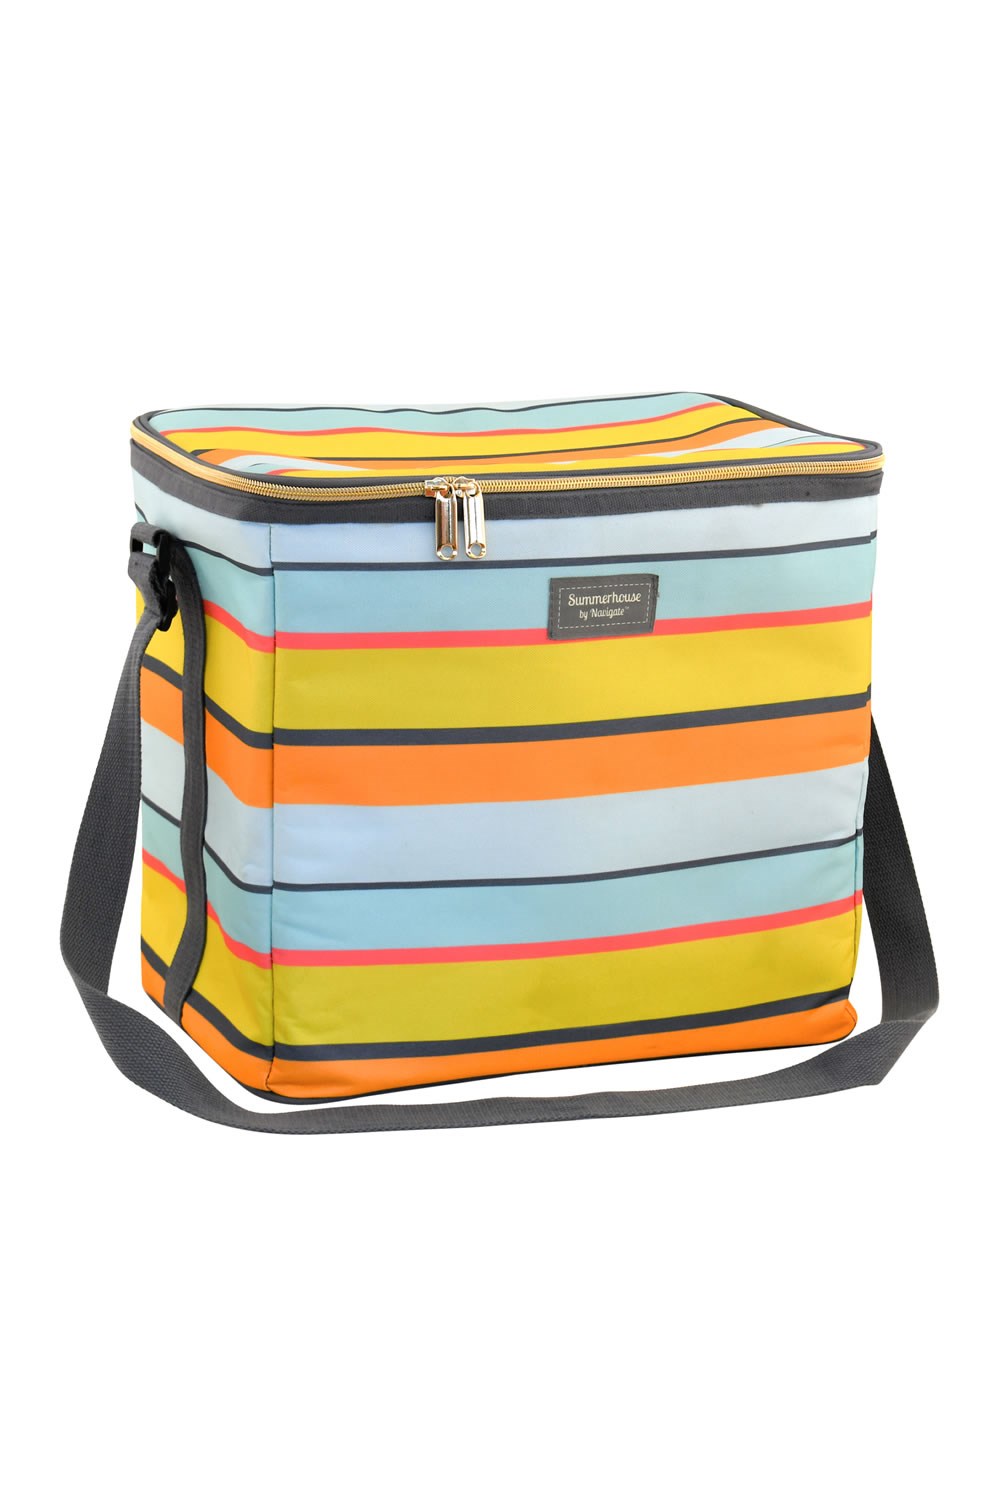 Waikiki Stripe 20L Insulated Cooler Bag -